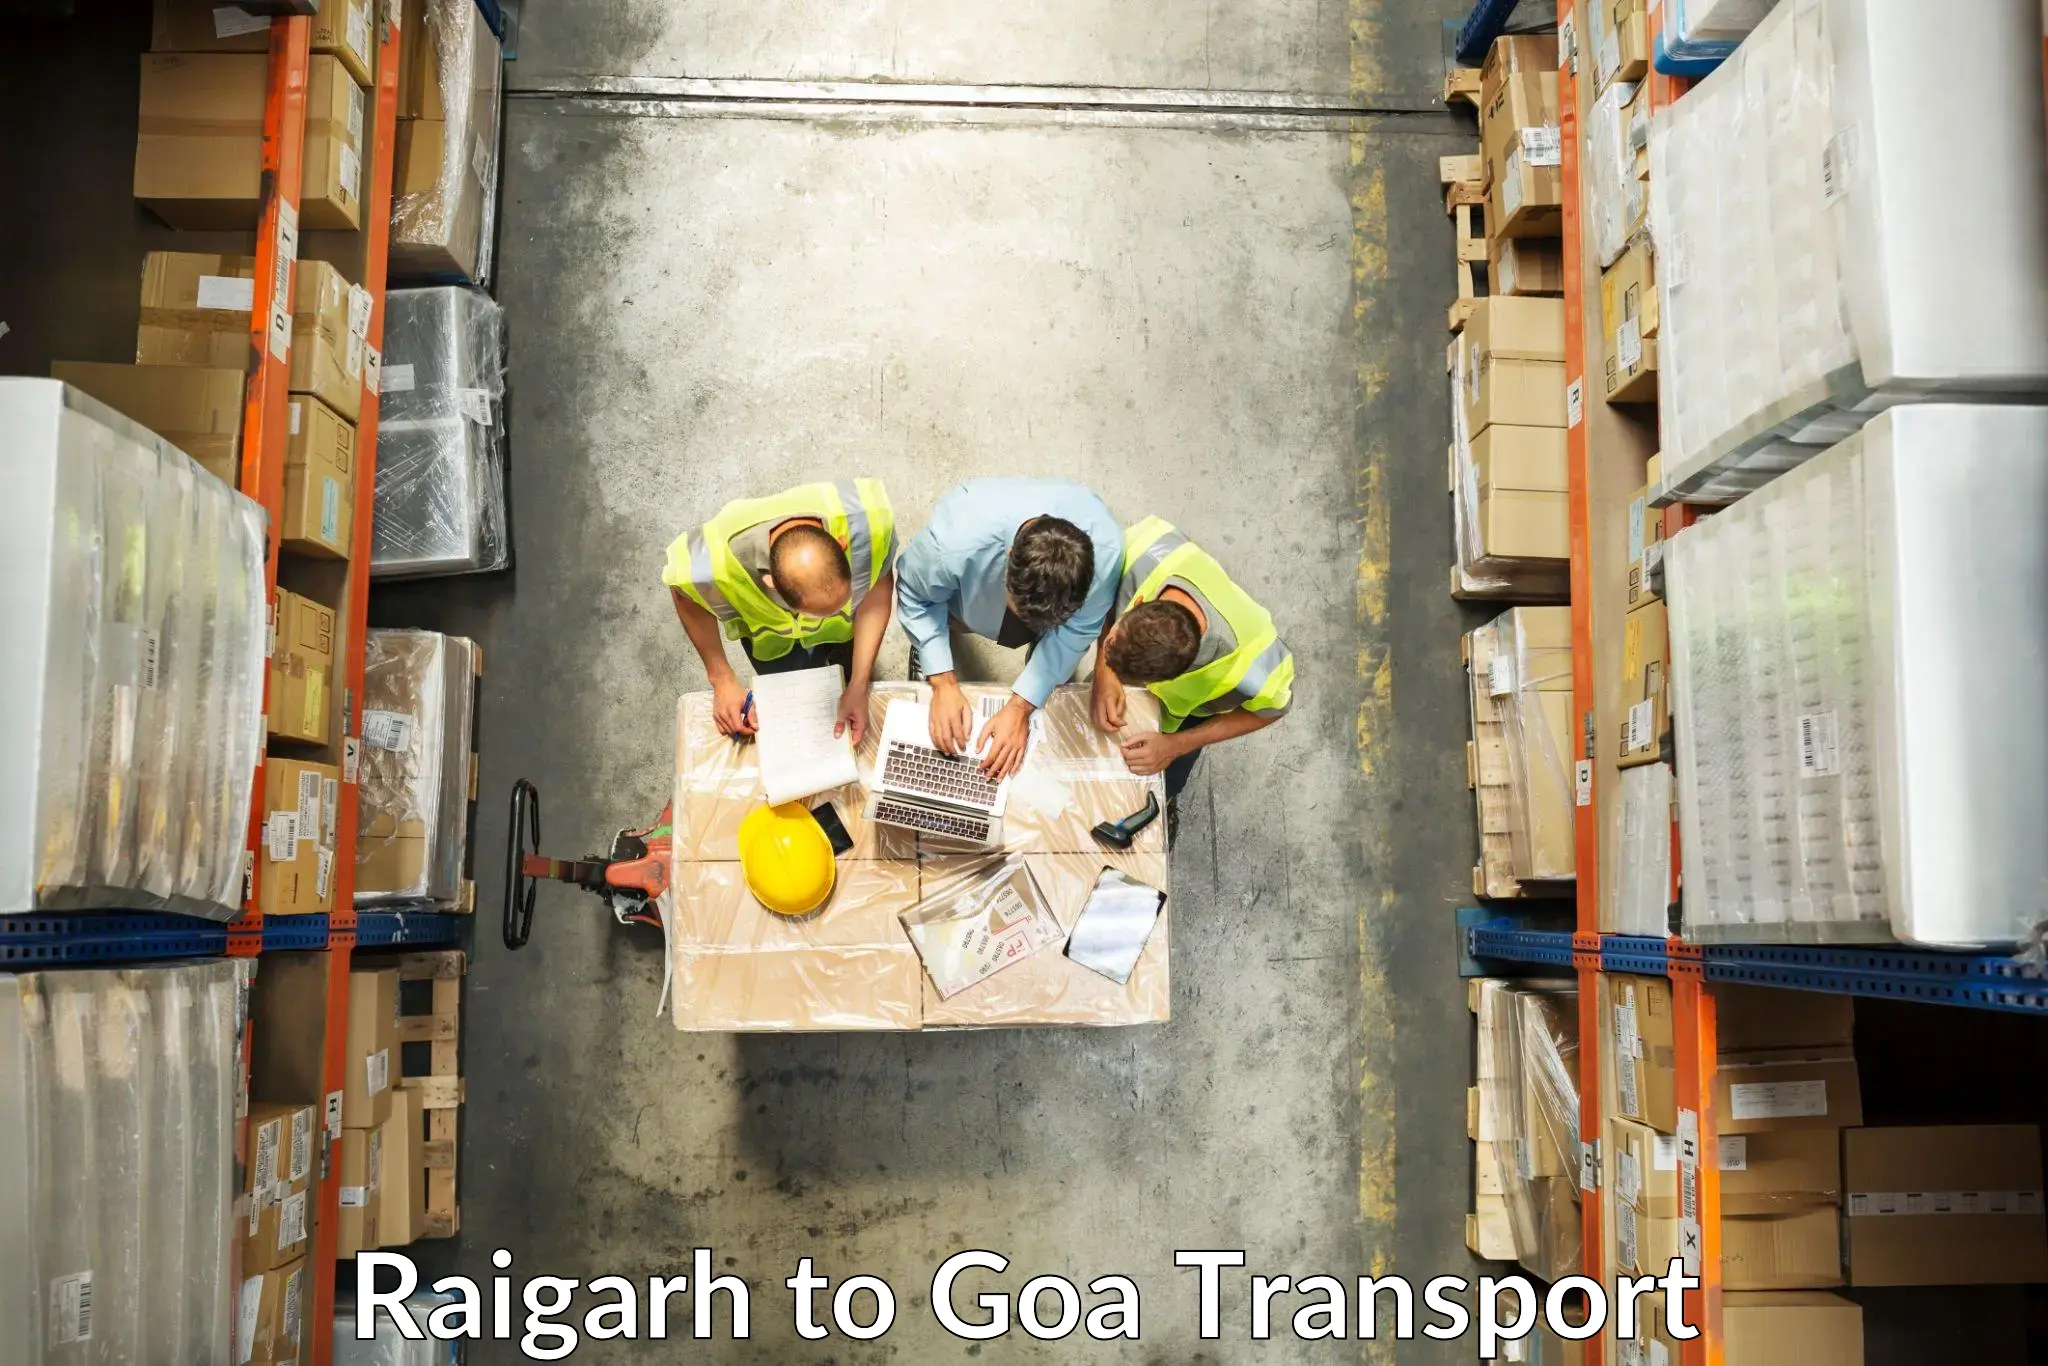 Nearest transport service Raigarh to Vasco da Gama